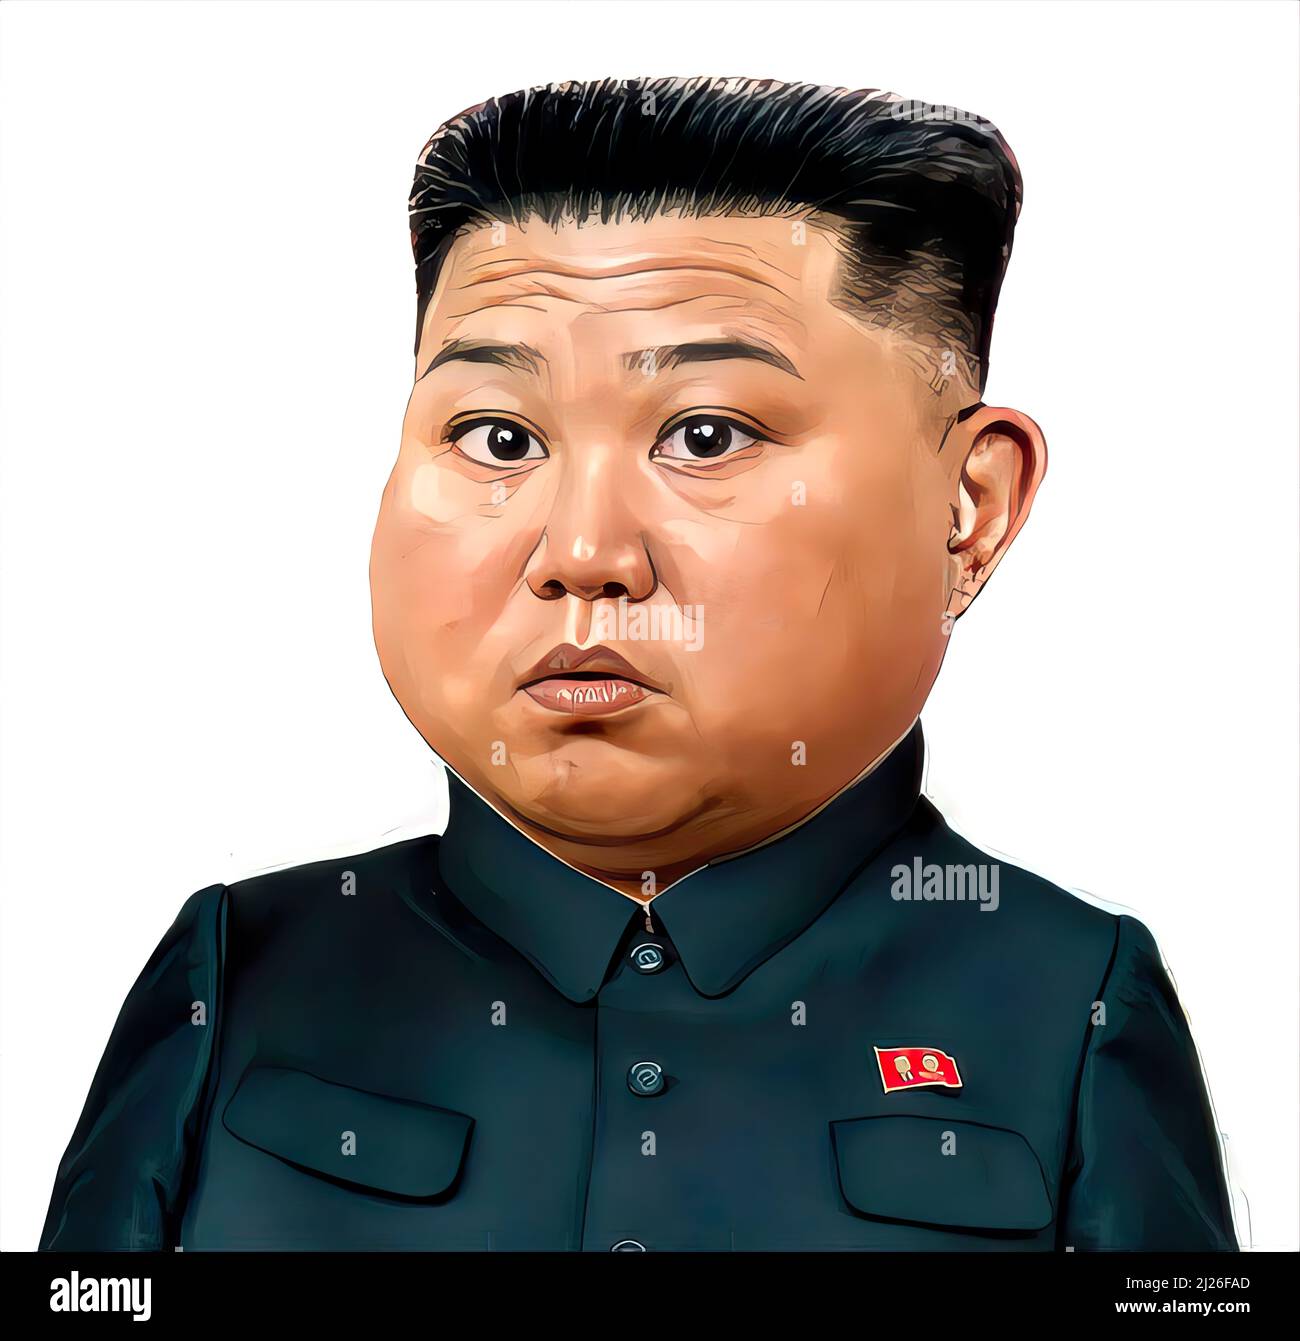 Le président nord-coréen, le dictateur Kim Jong un, fait face à la caricature, inquiet, étonné Banque D'Images